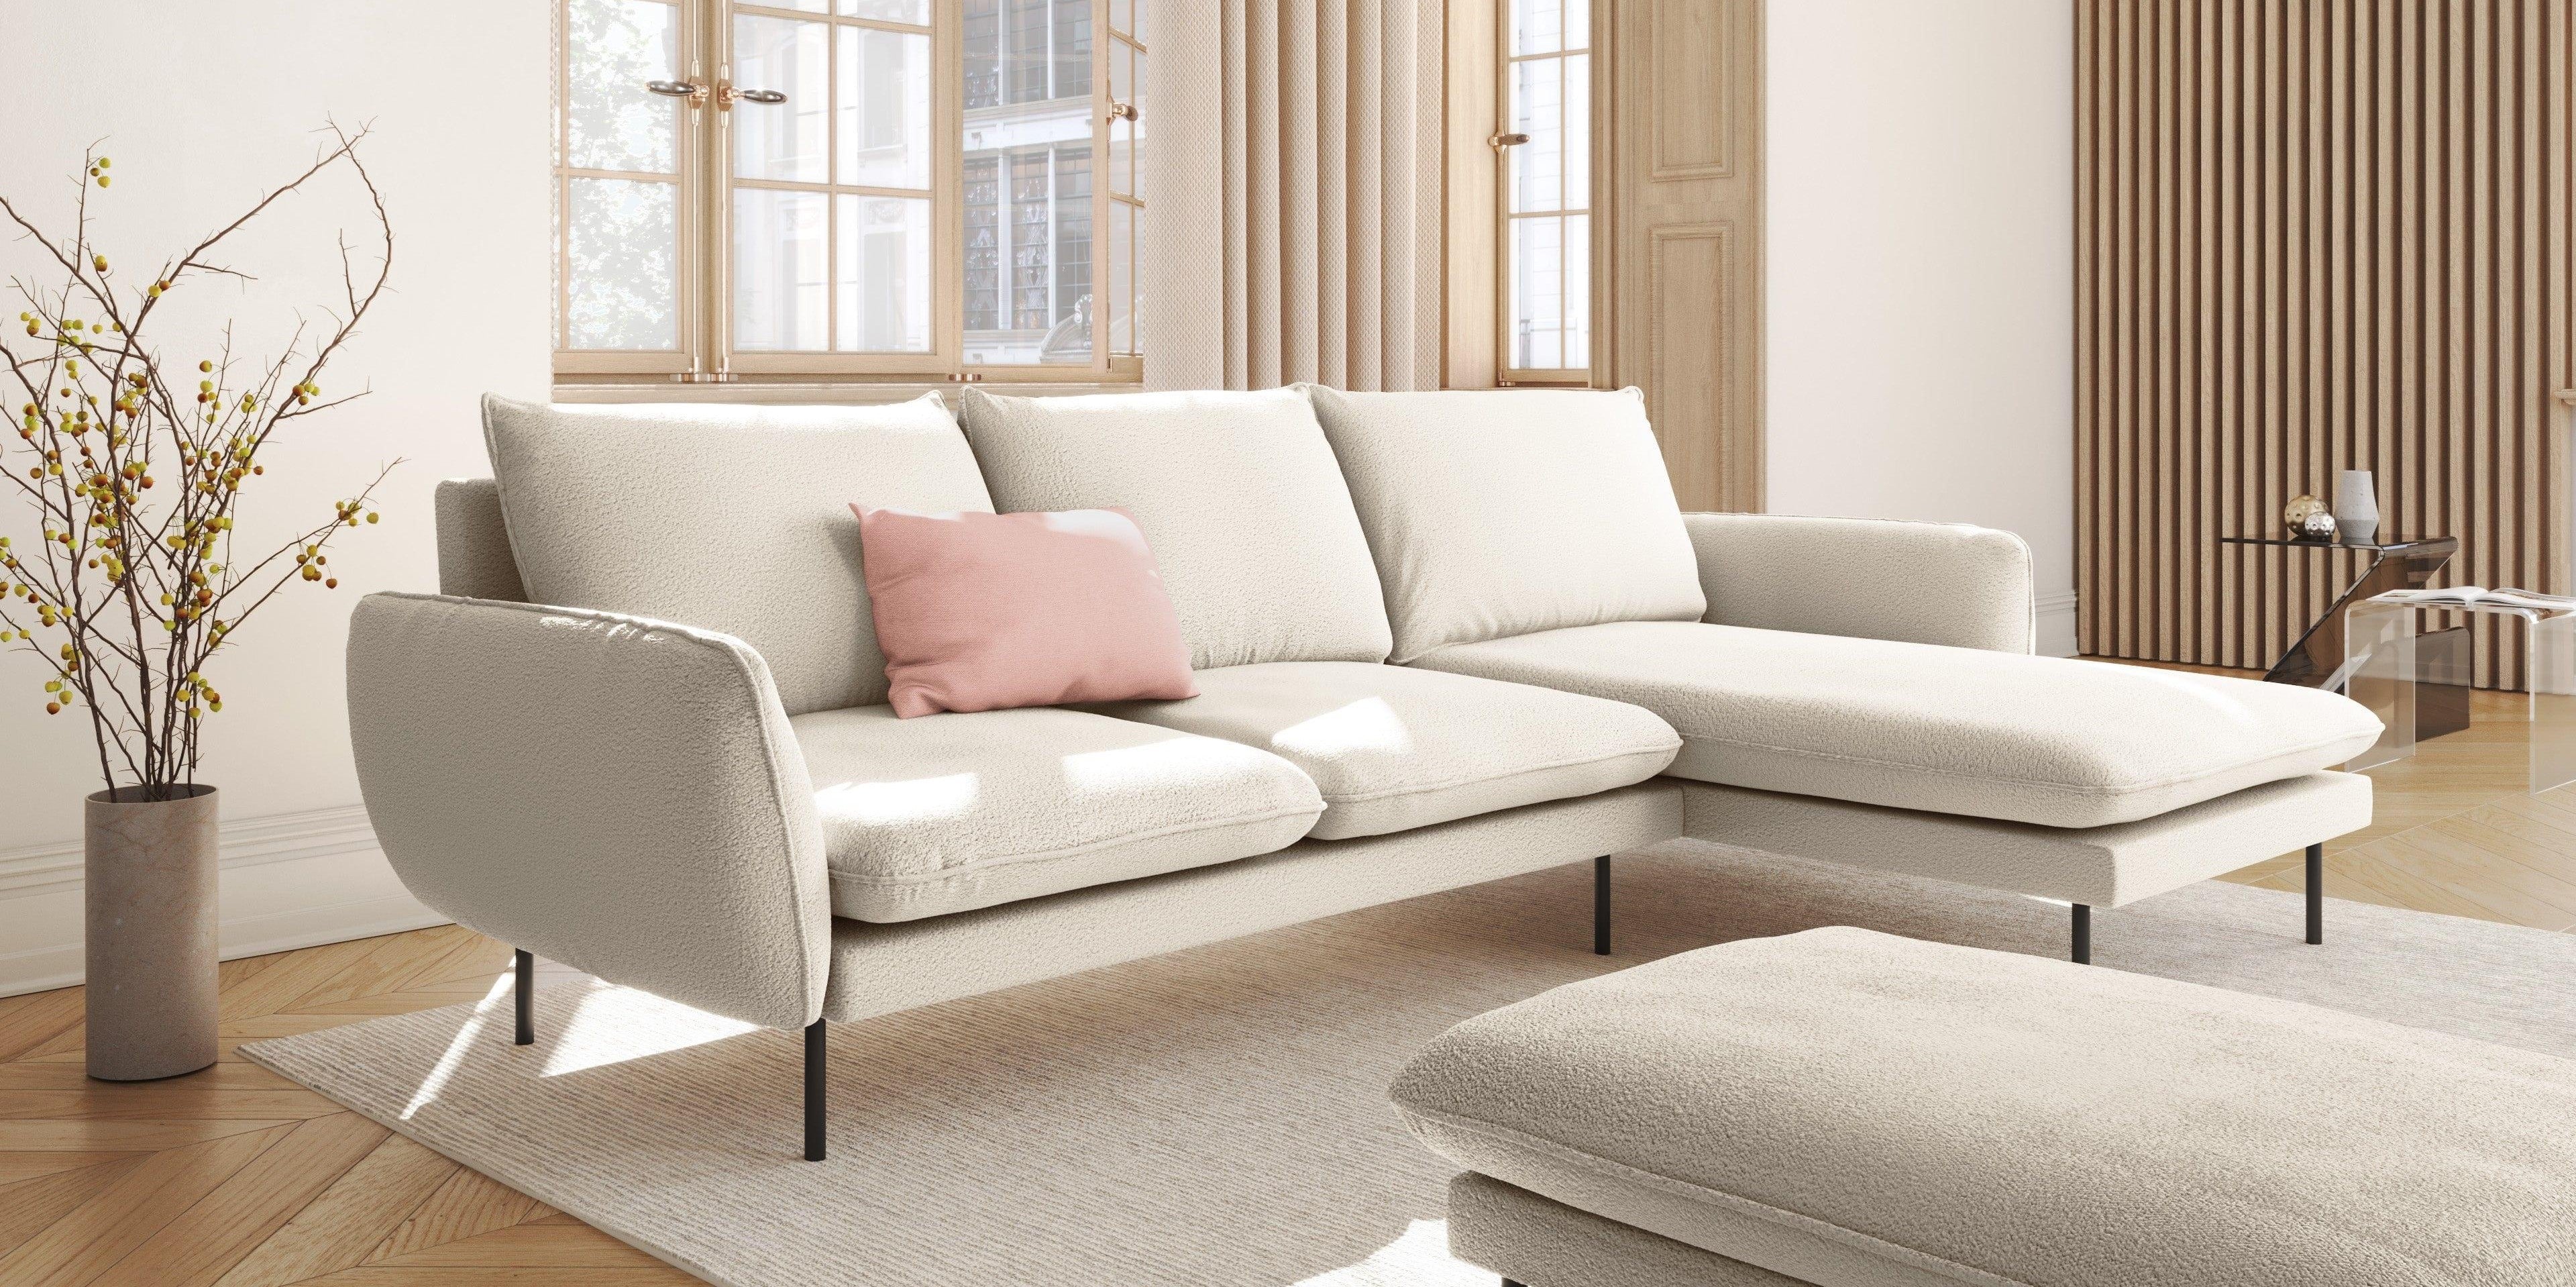 W salonie znajduje się minimalistyczny narożnik w kolorze białym, ozdobiony różowymi poduszkami.